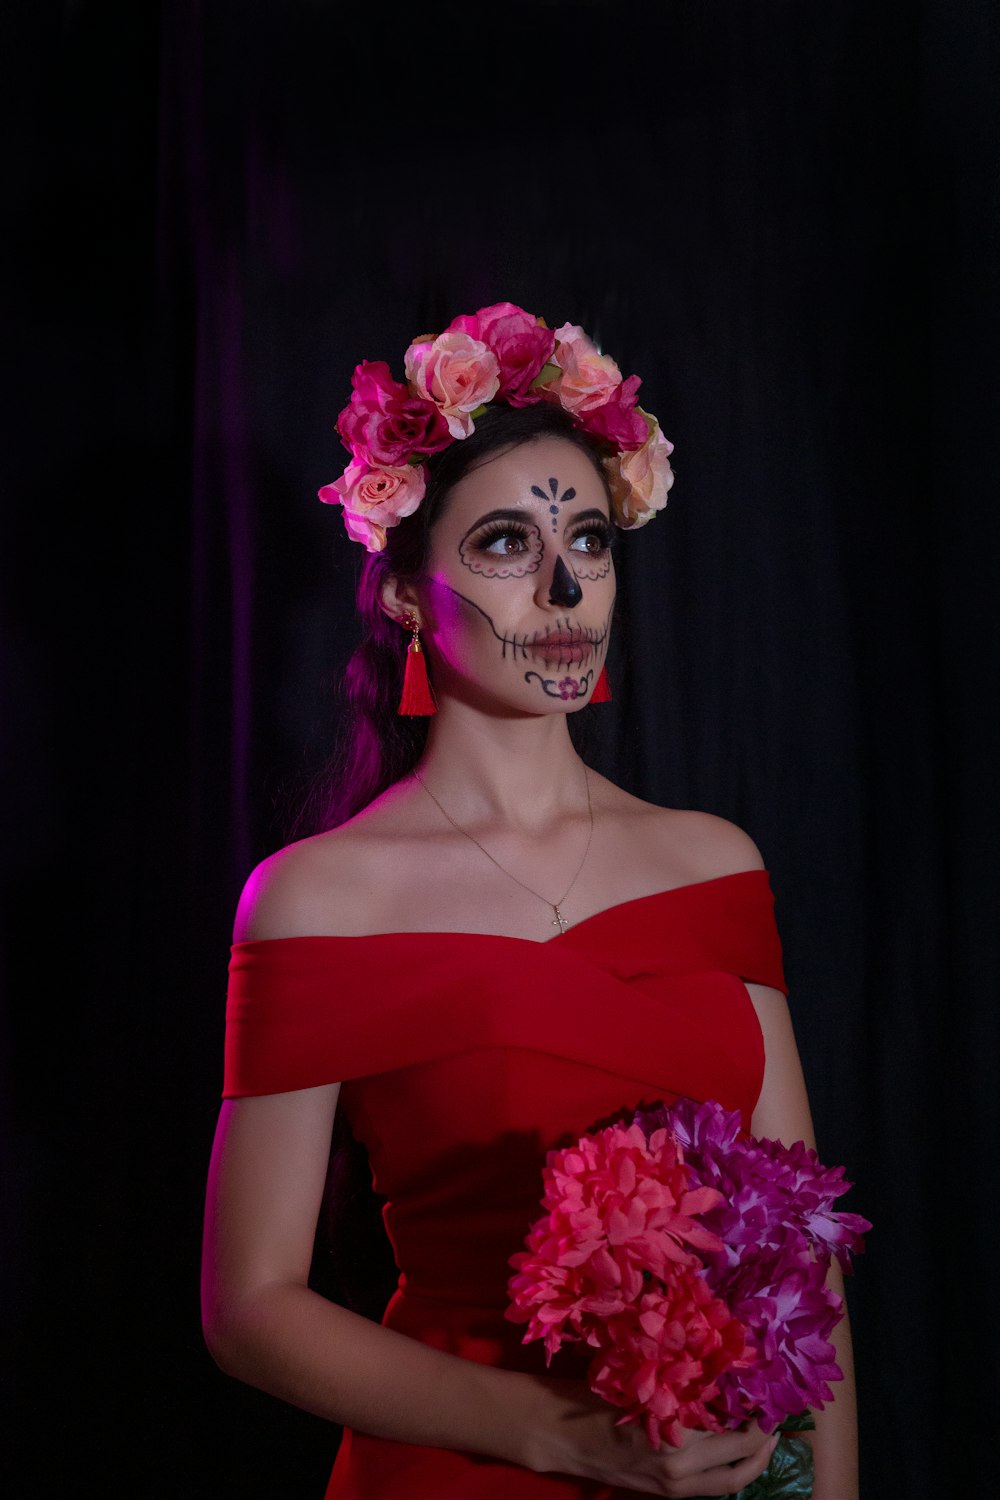 Foto mujer con vestido rojo con hombros descubiertos y corona de flores  rosas – Imagen Dia de los muertos gratis en Unsplash